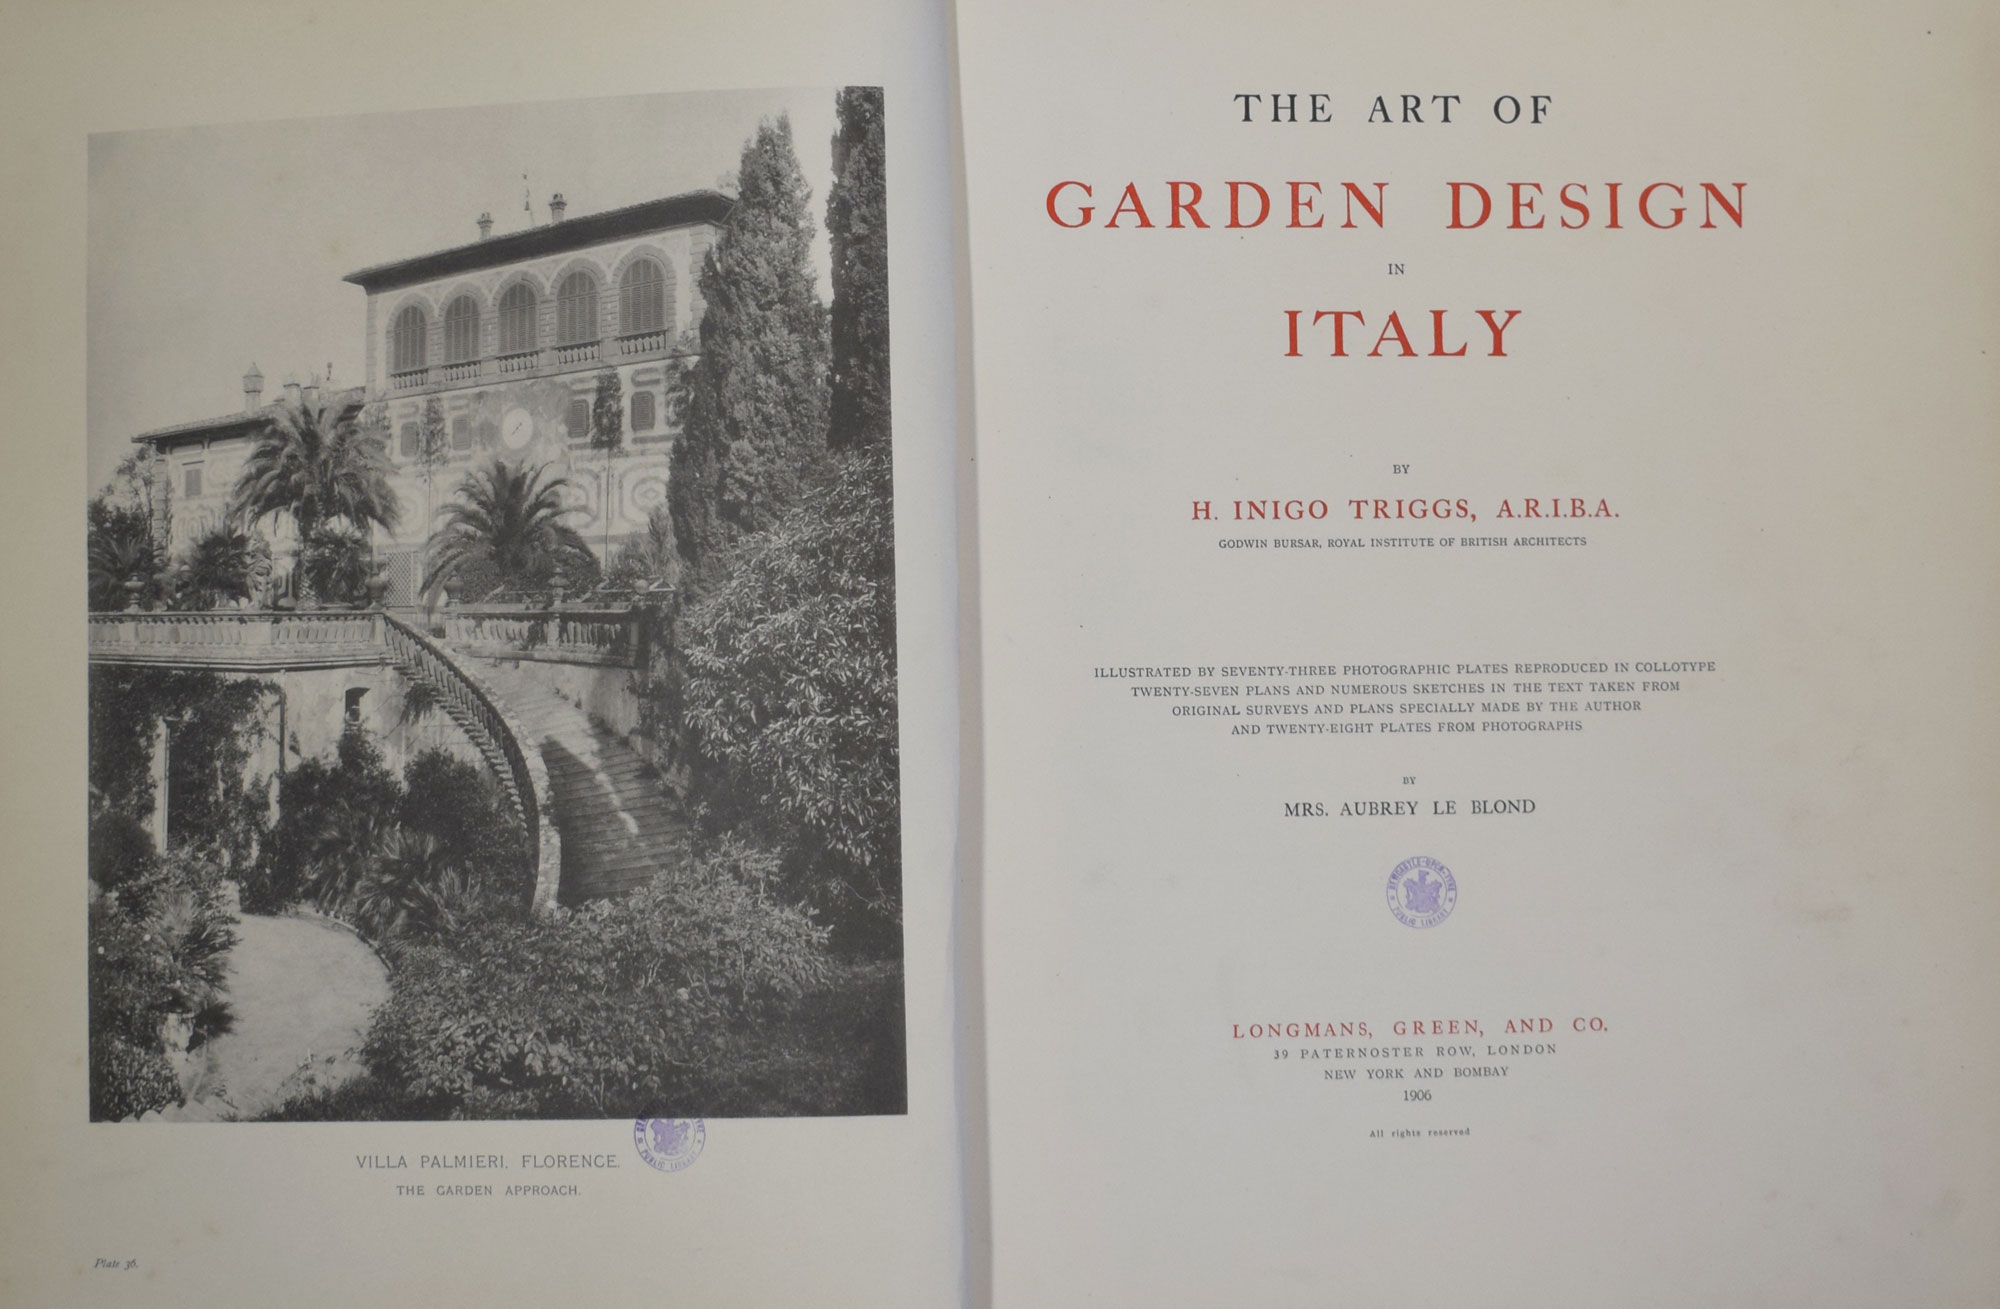 The Art of Garden Design in Italy